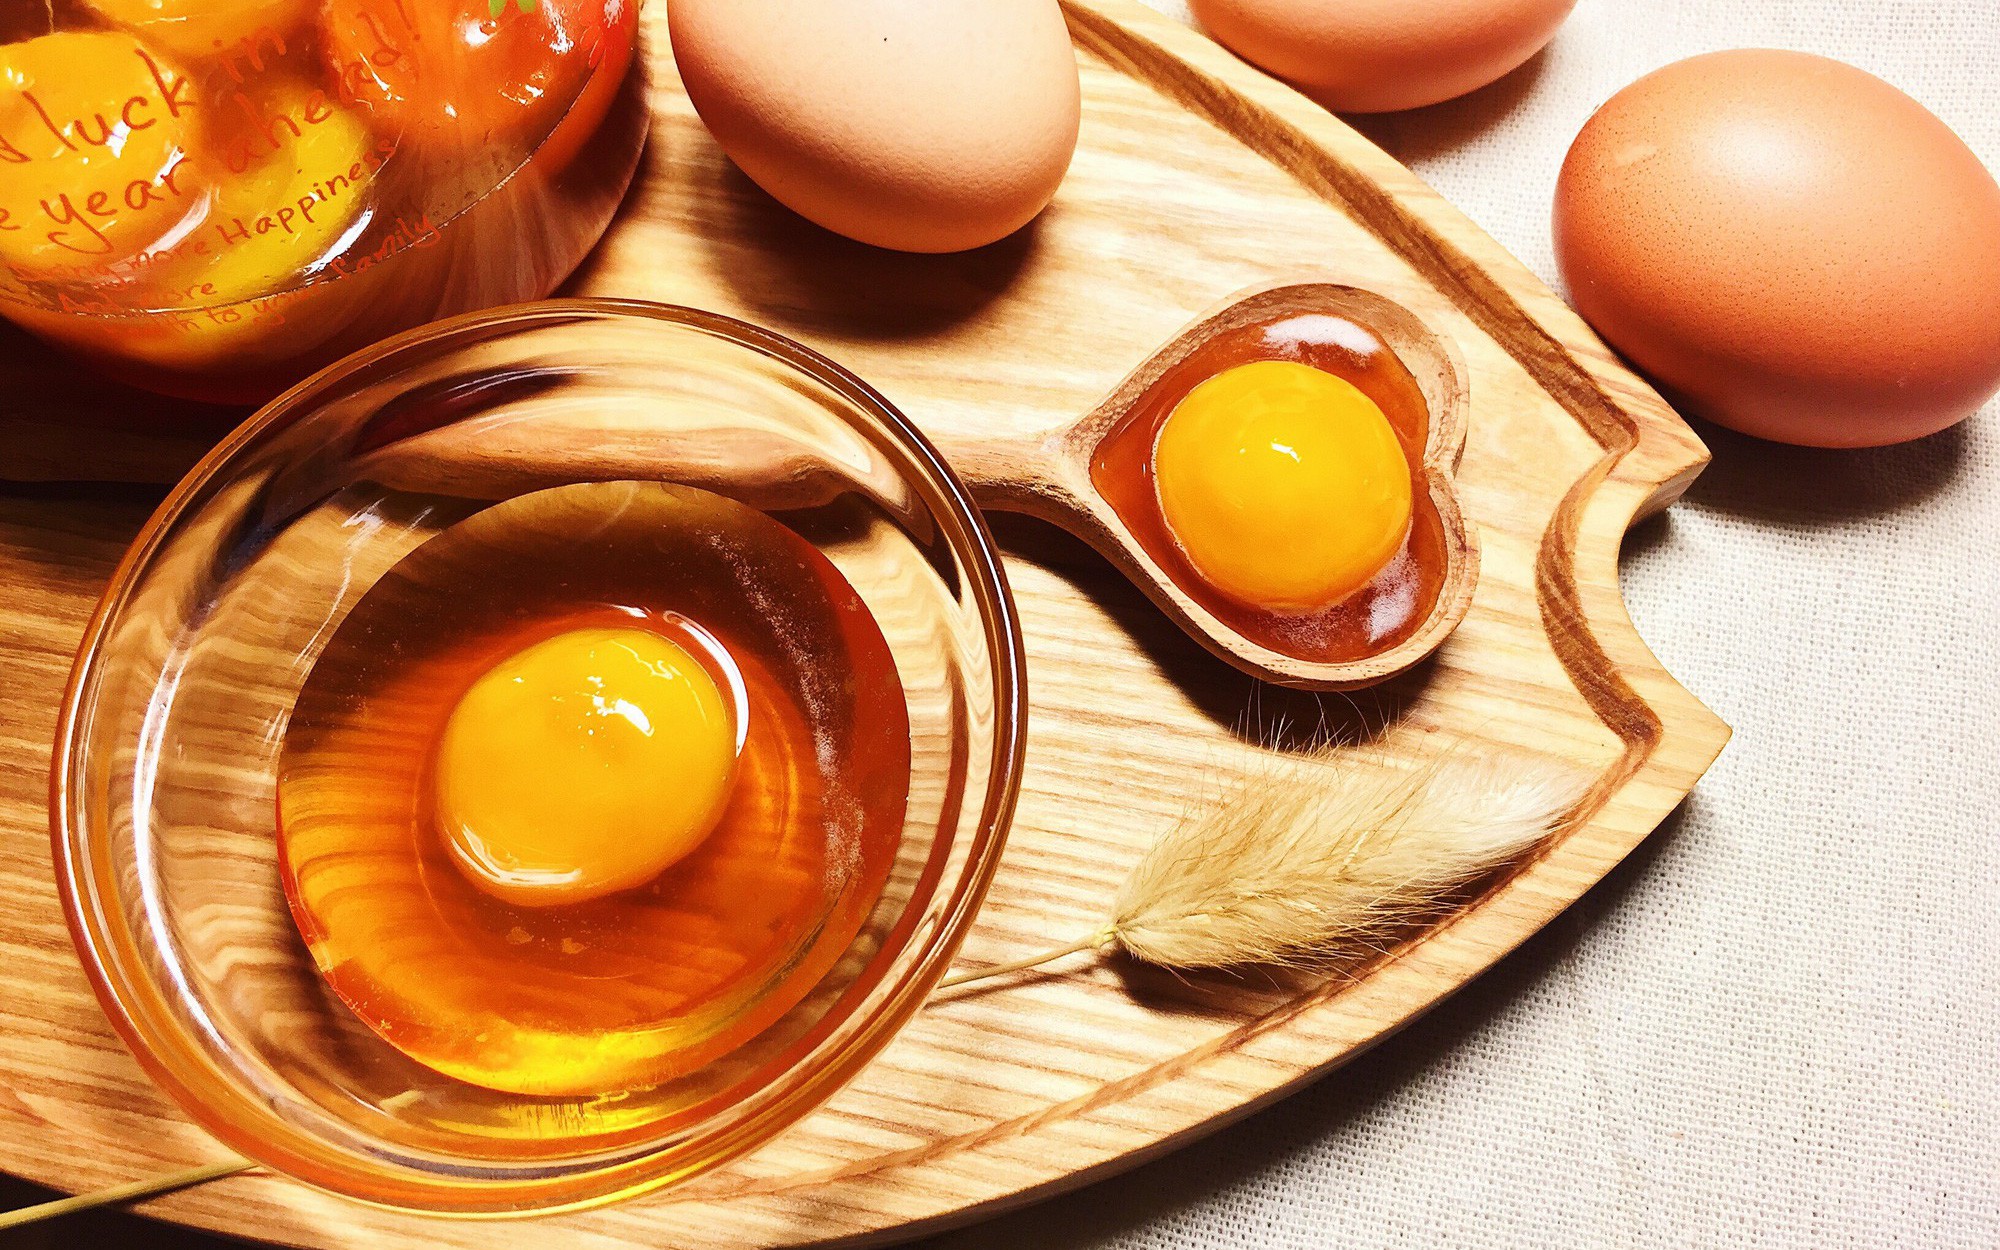 Trứng gà và mật ong đều là các thực phẩm giàu dinh dưỡng và nhiều khoáng chất